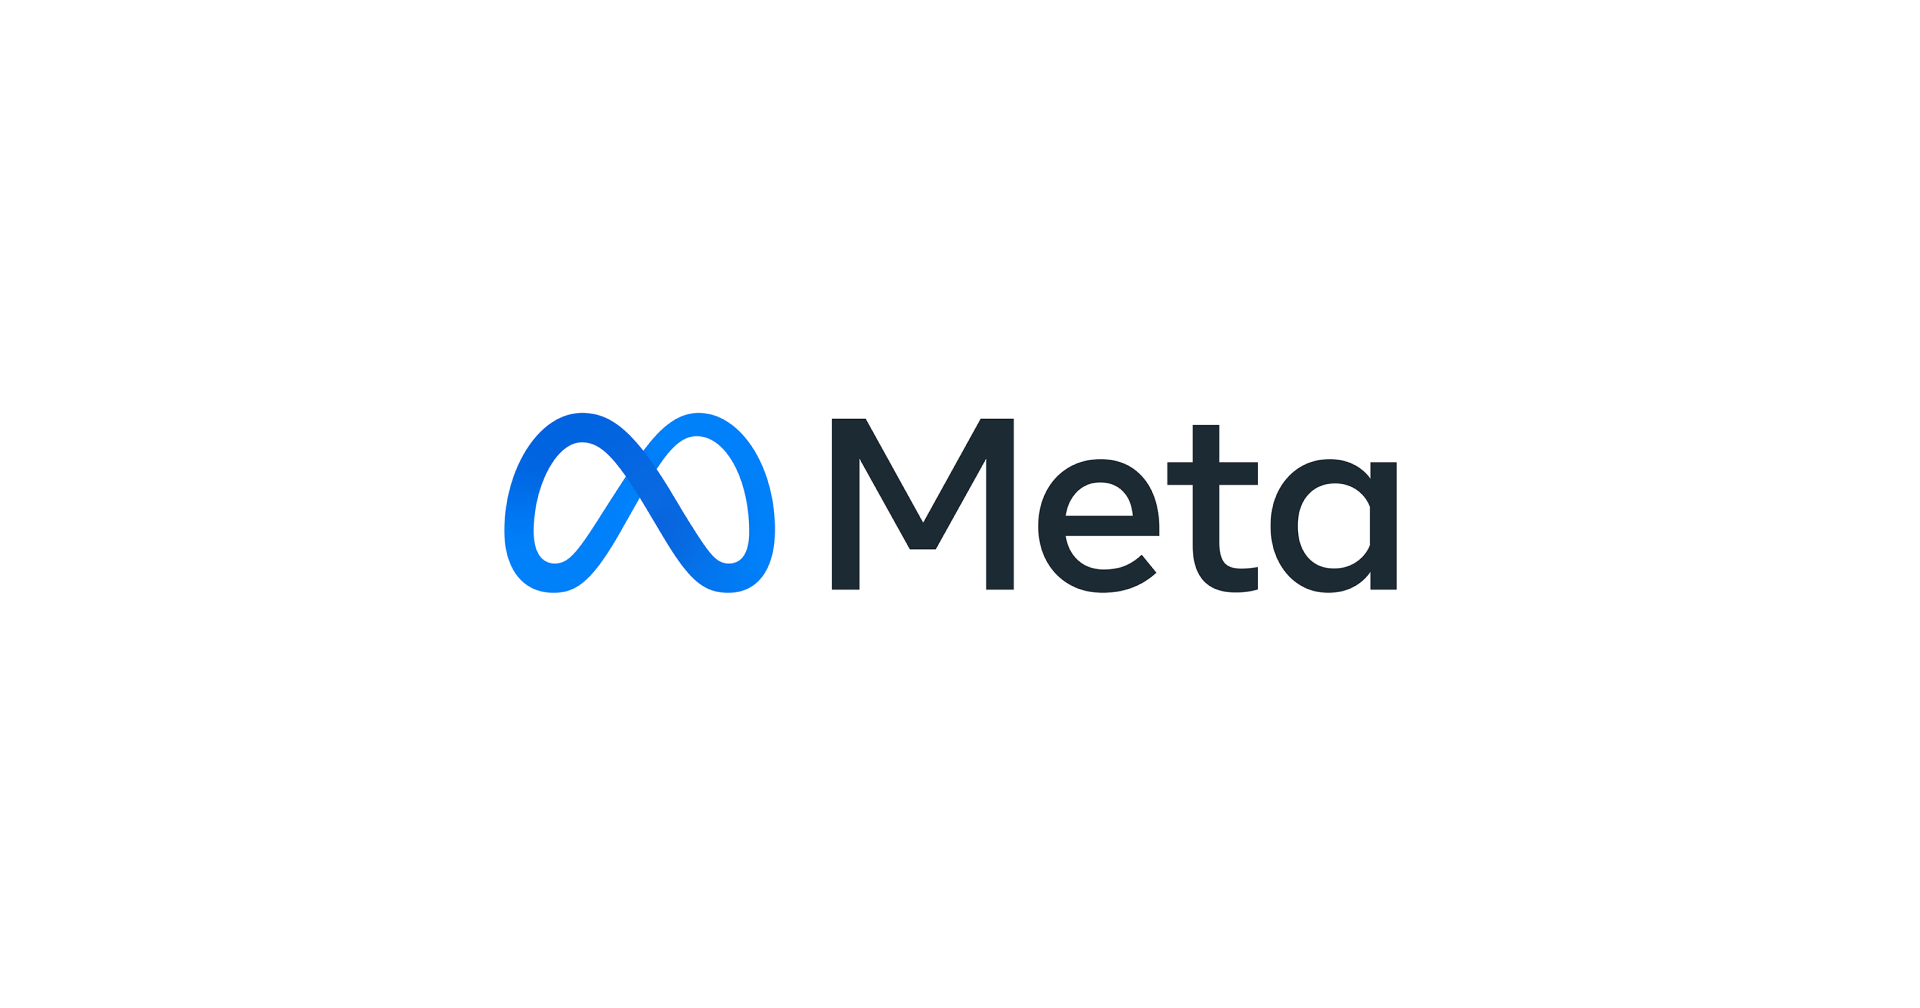 Facebook ประกาศเปลี่ยนชื่อเป็น ‘Meta’ อย่างเป็นทางการ ตอกย้ำทิศทางบริษัท